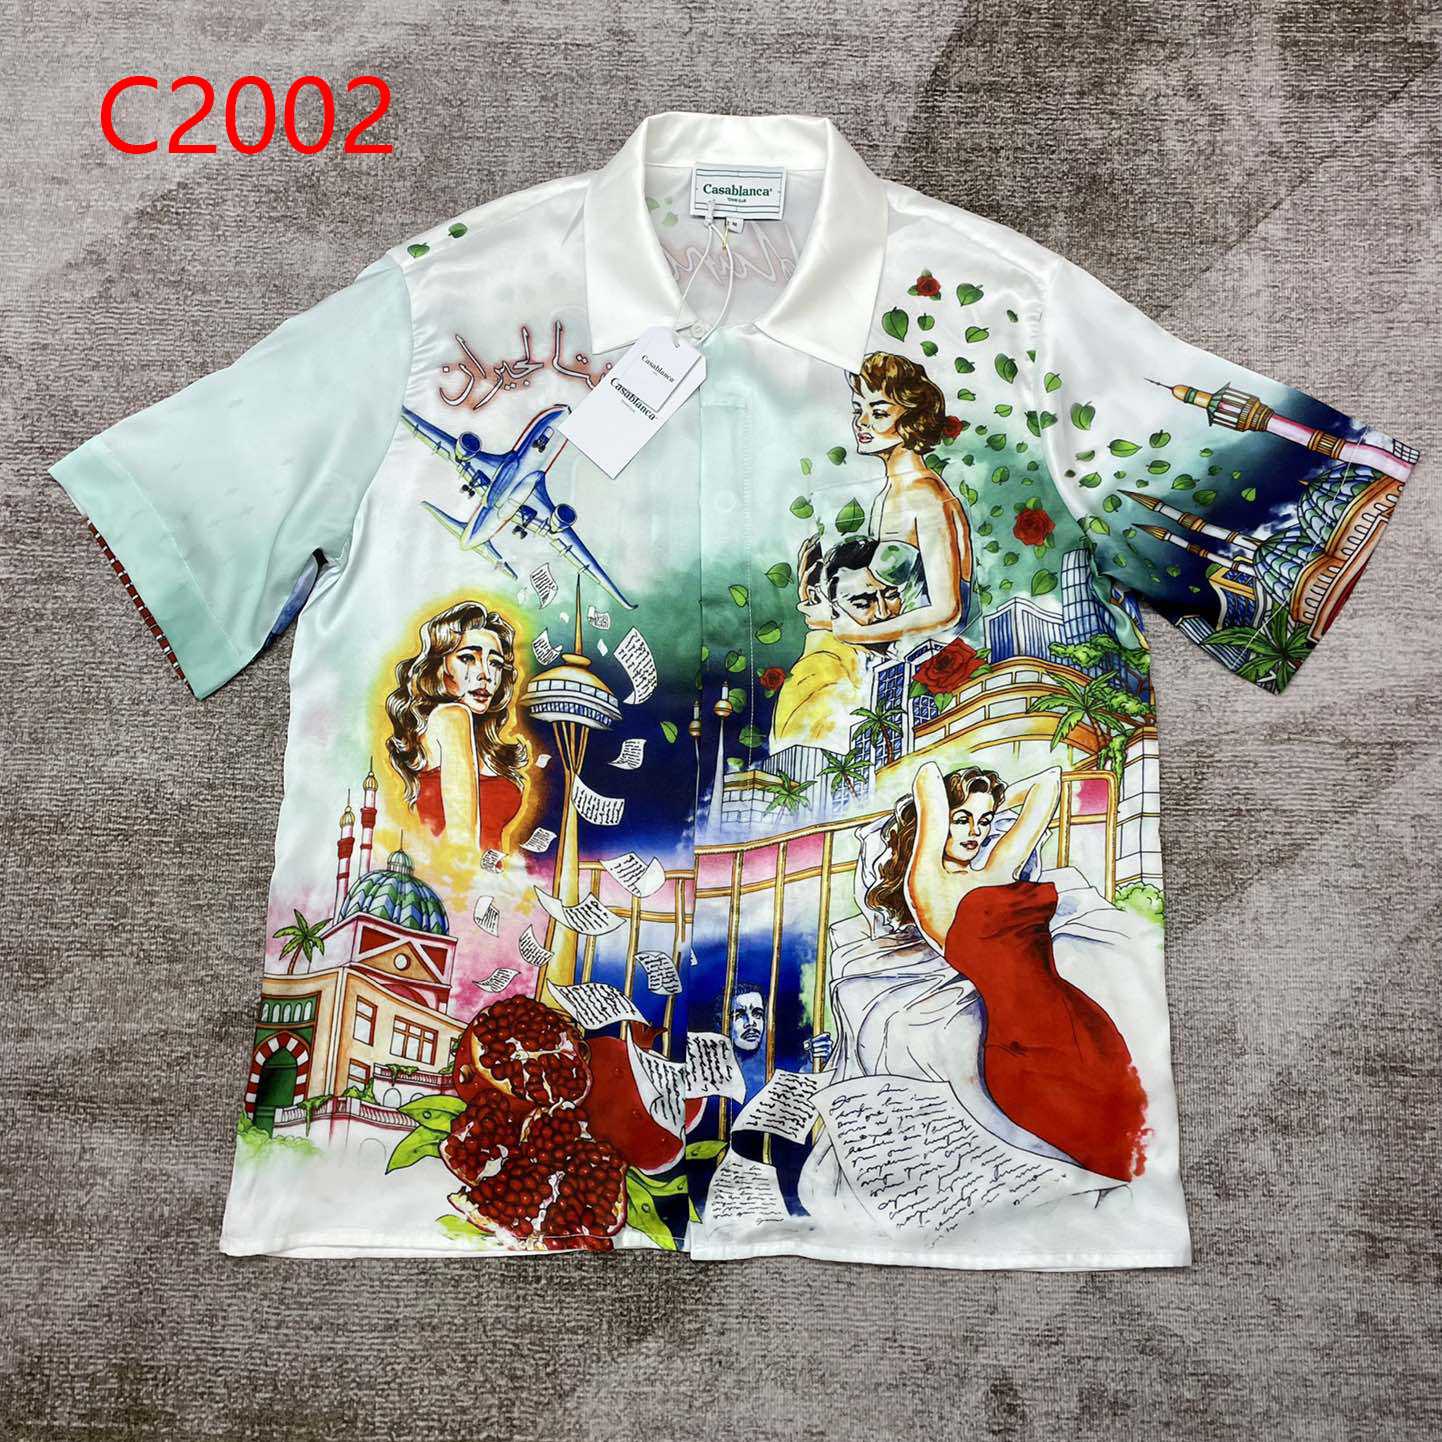 Casablanca La Liason Silk Shirt     C2002 - DesignerGu